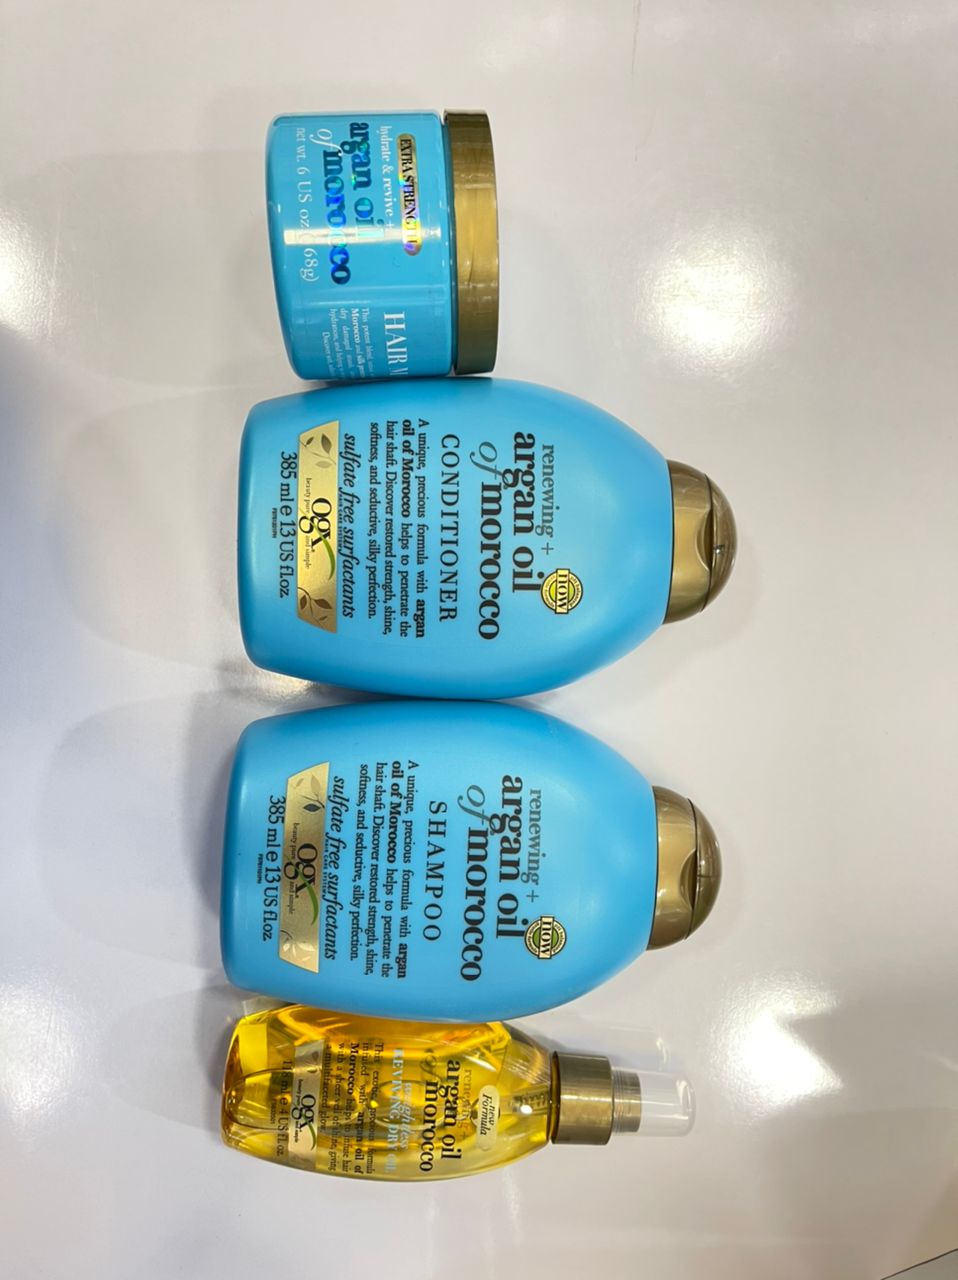 پک محصولات روغن آرگان مراکش اوجی ایکس OGX | شامپو، نرم کننده، ماسک مو و اسپری روغن آرگان